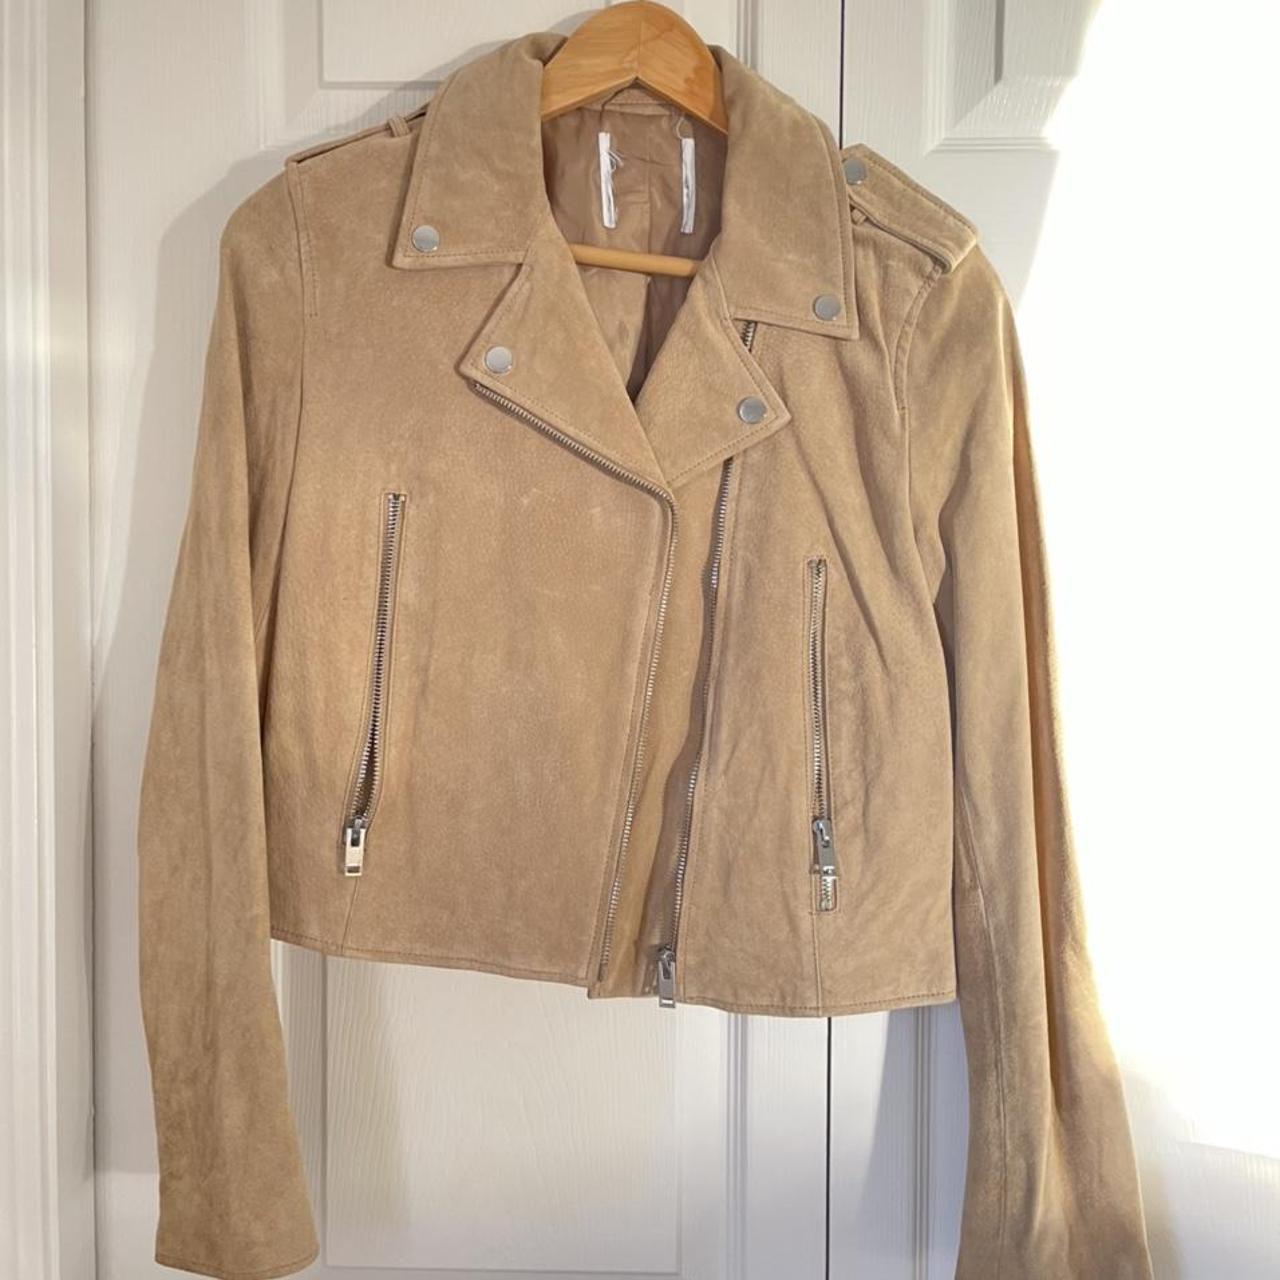 XS-S 100% leather #Mango #jacket - Depop